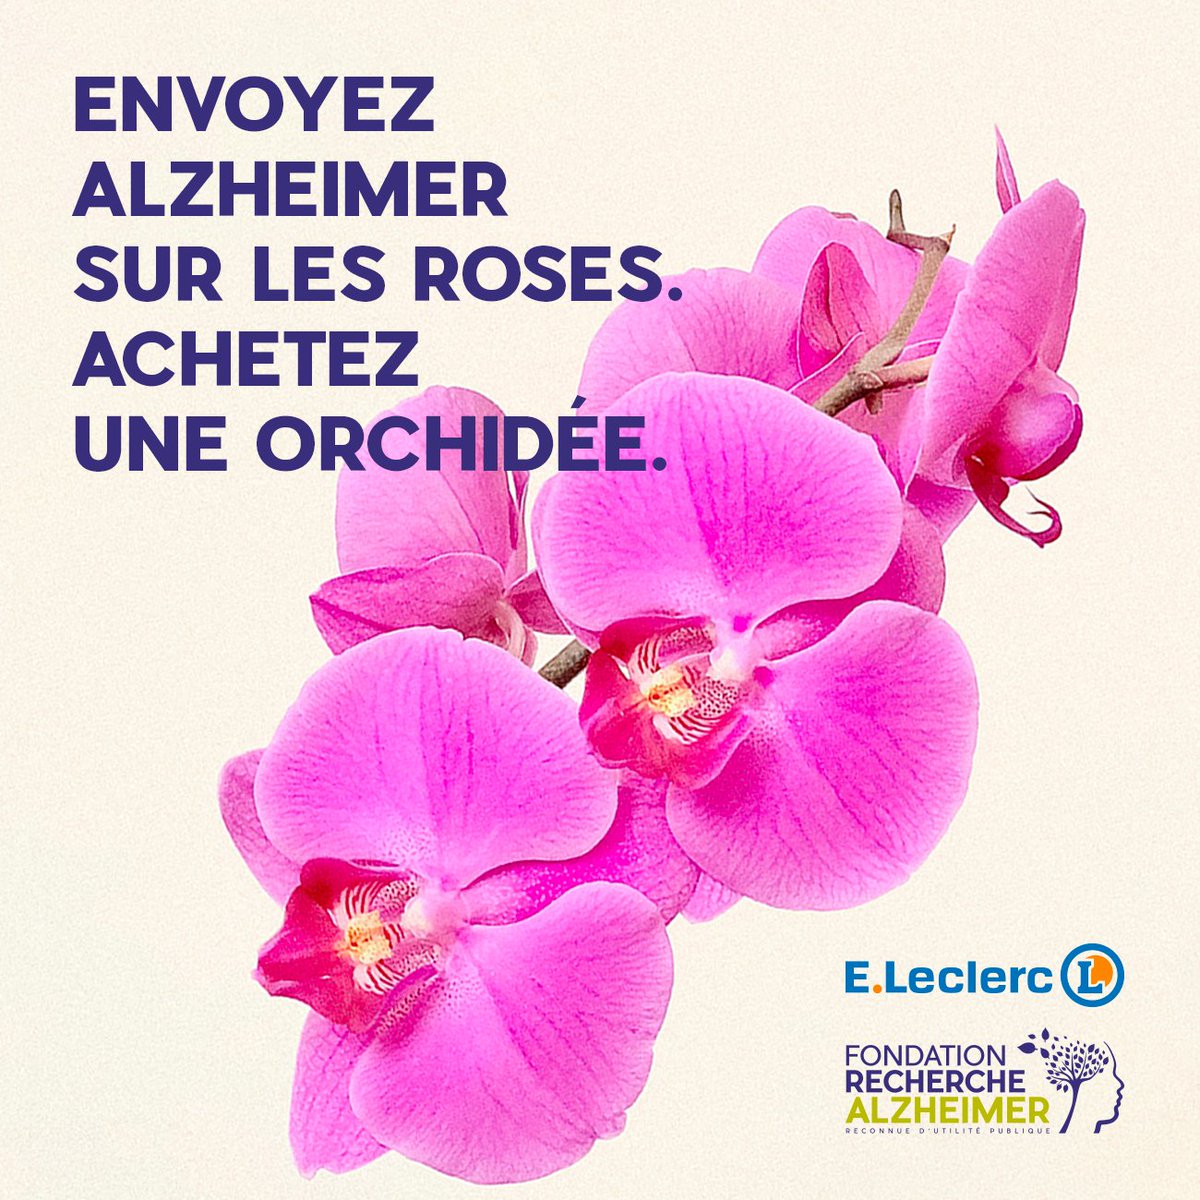 Ensemble contre Alzheimer ! Du 12 au 30 septembre, pour chaque orchidée achetée dans votre magasin E.Leclerc participant, 4€ sont reversés à la @Alzh_Fondation.